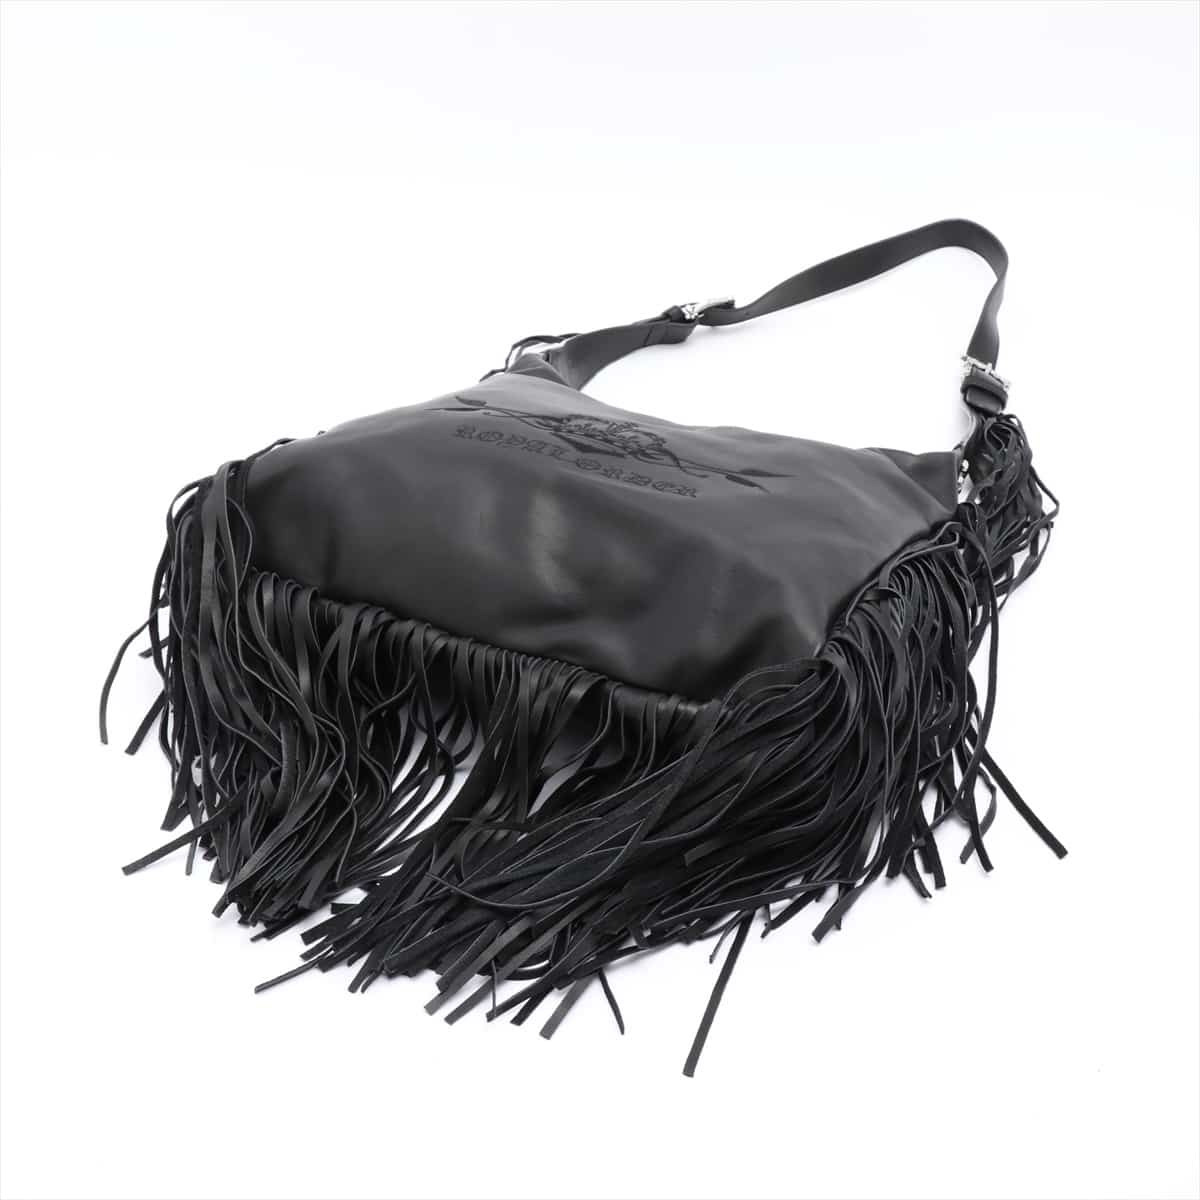 ROYAL ORDER Shoulder bag Leather Black